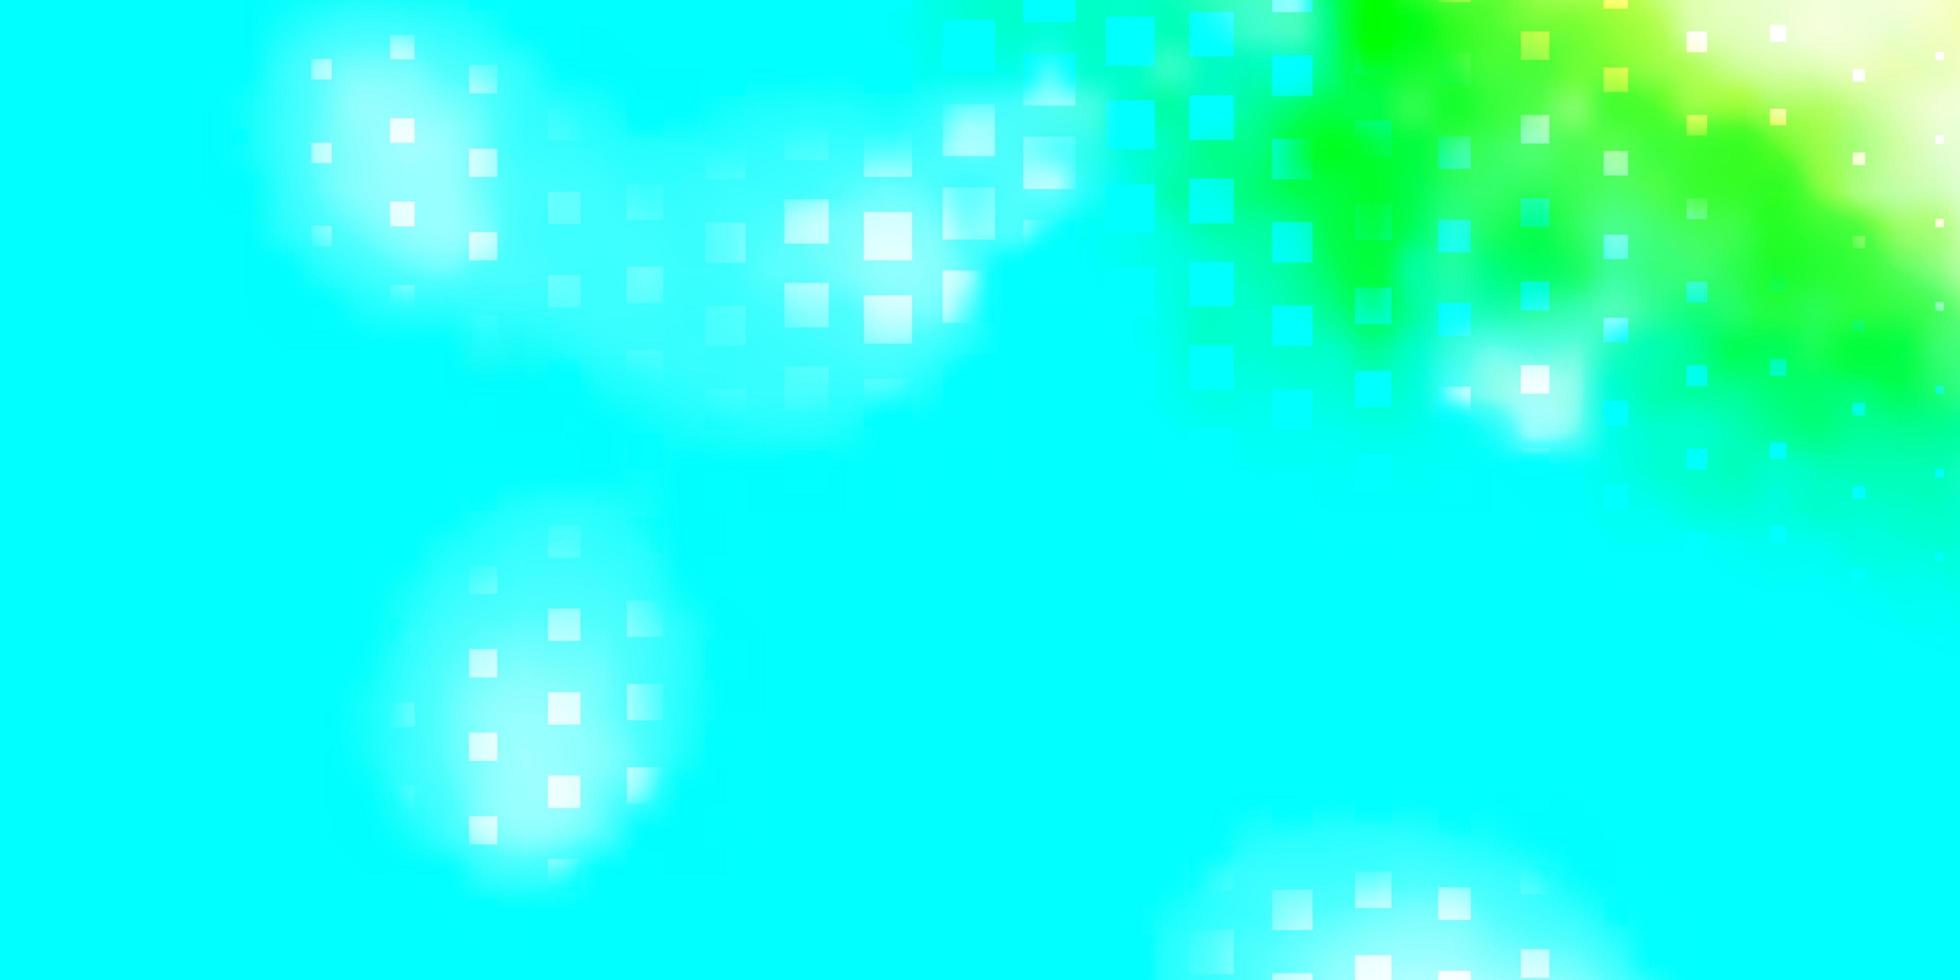 sfondo vettoriale azzurro, verde con rettangoli.